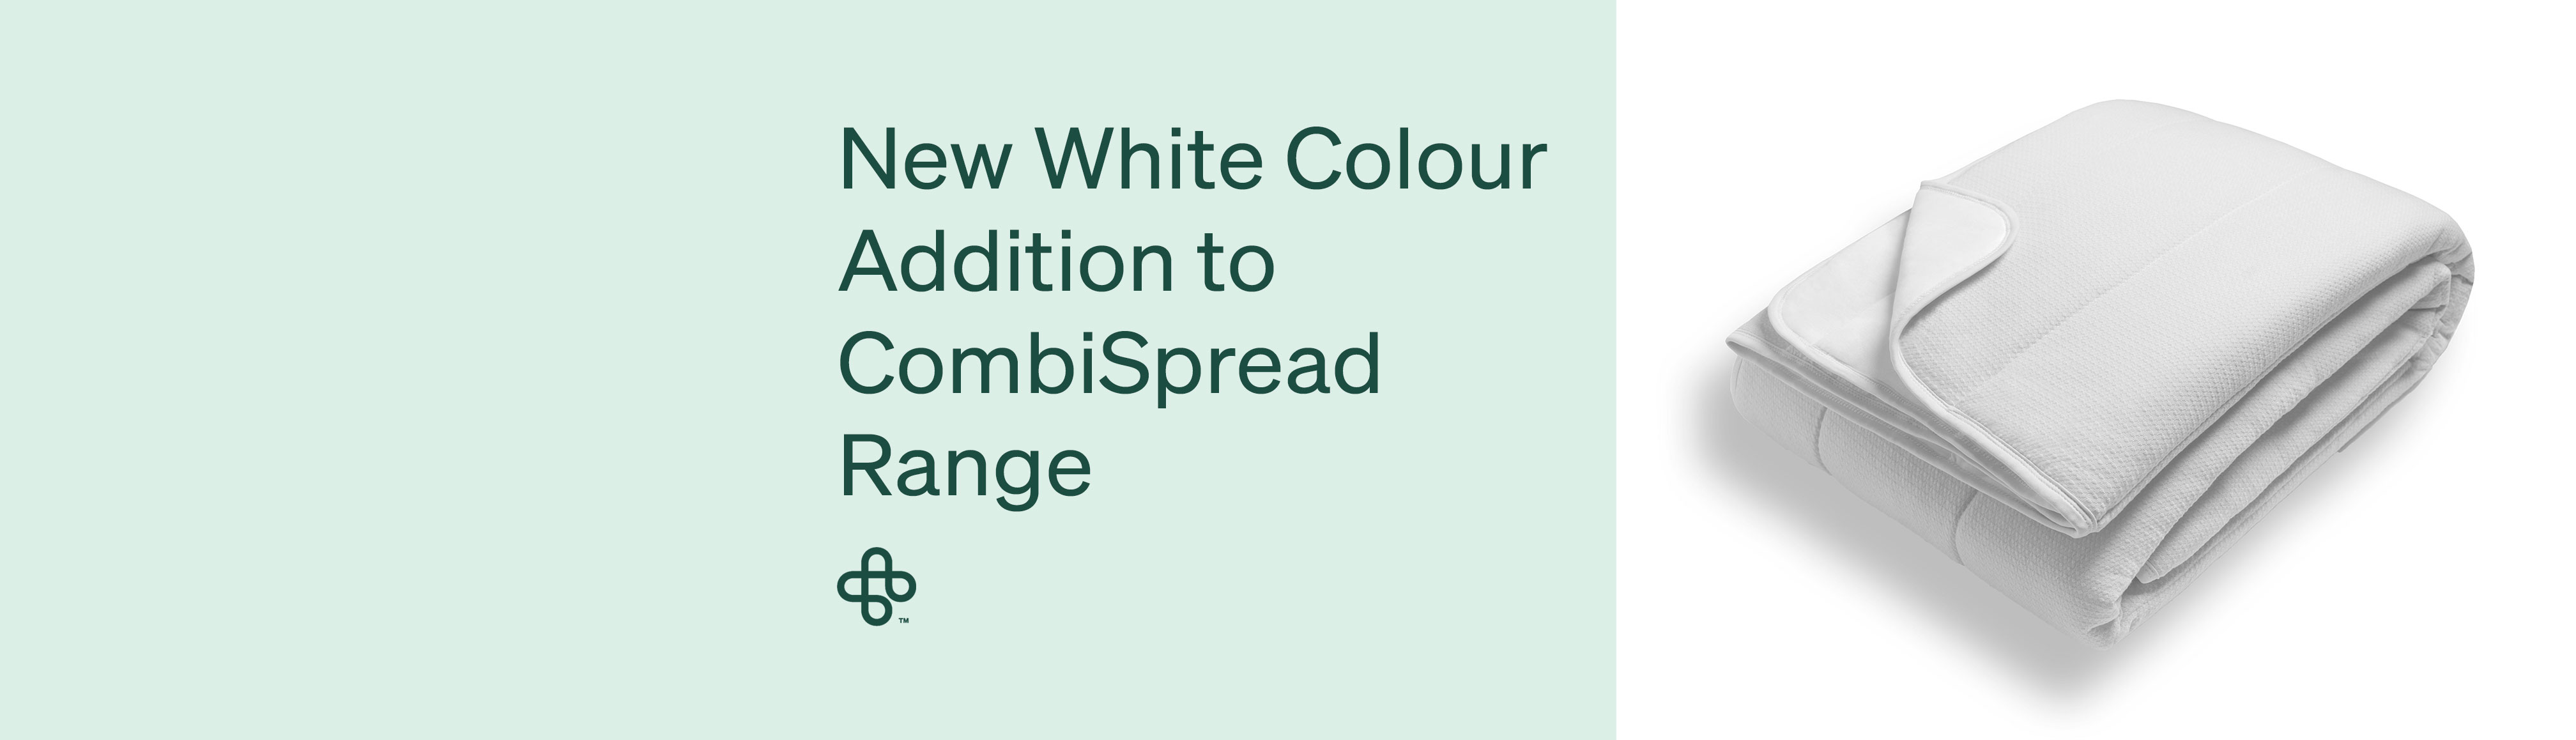 New White Colour Addition to CombiSpread Range